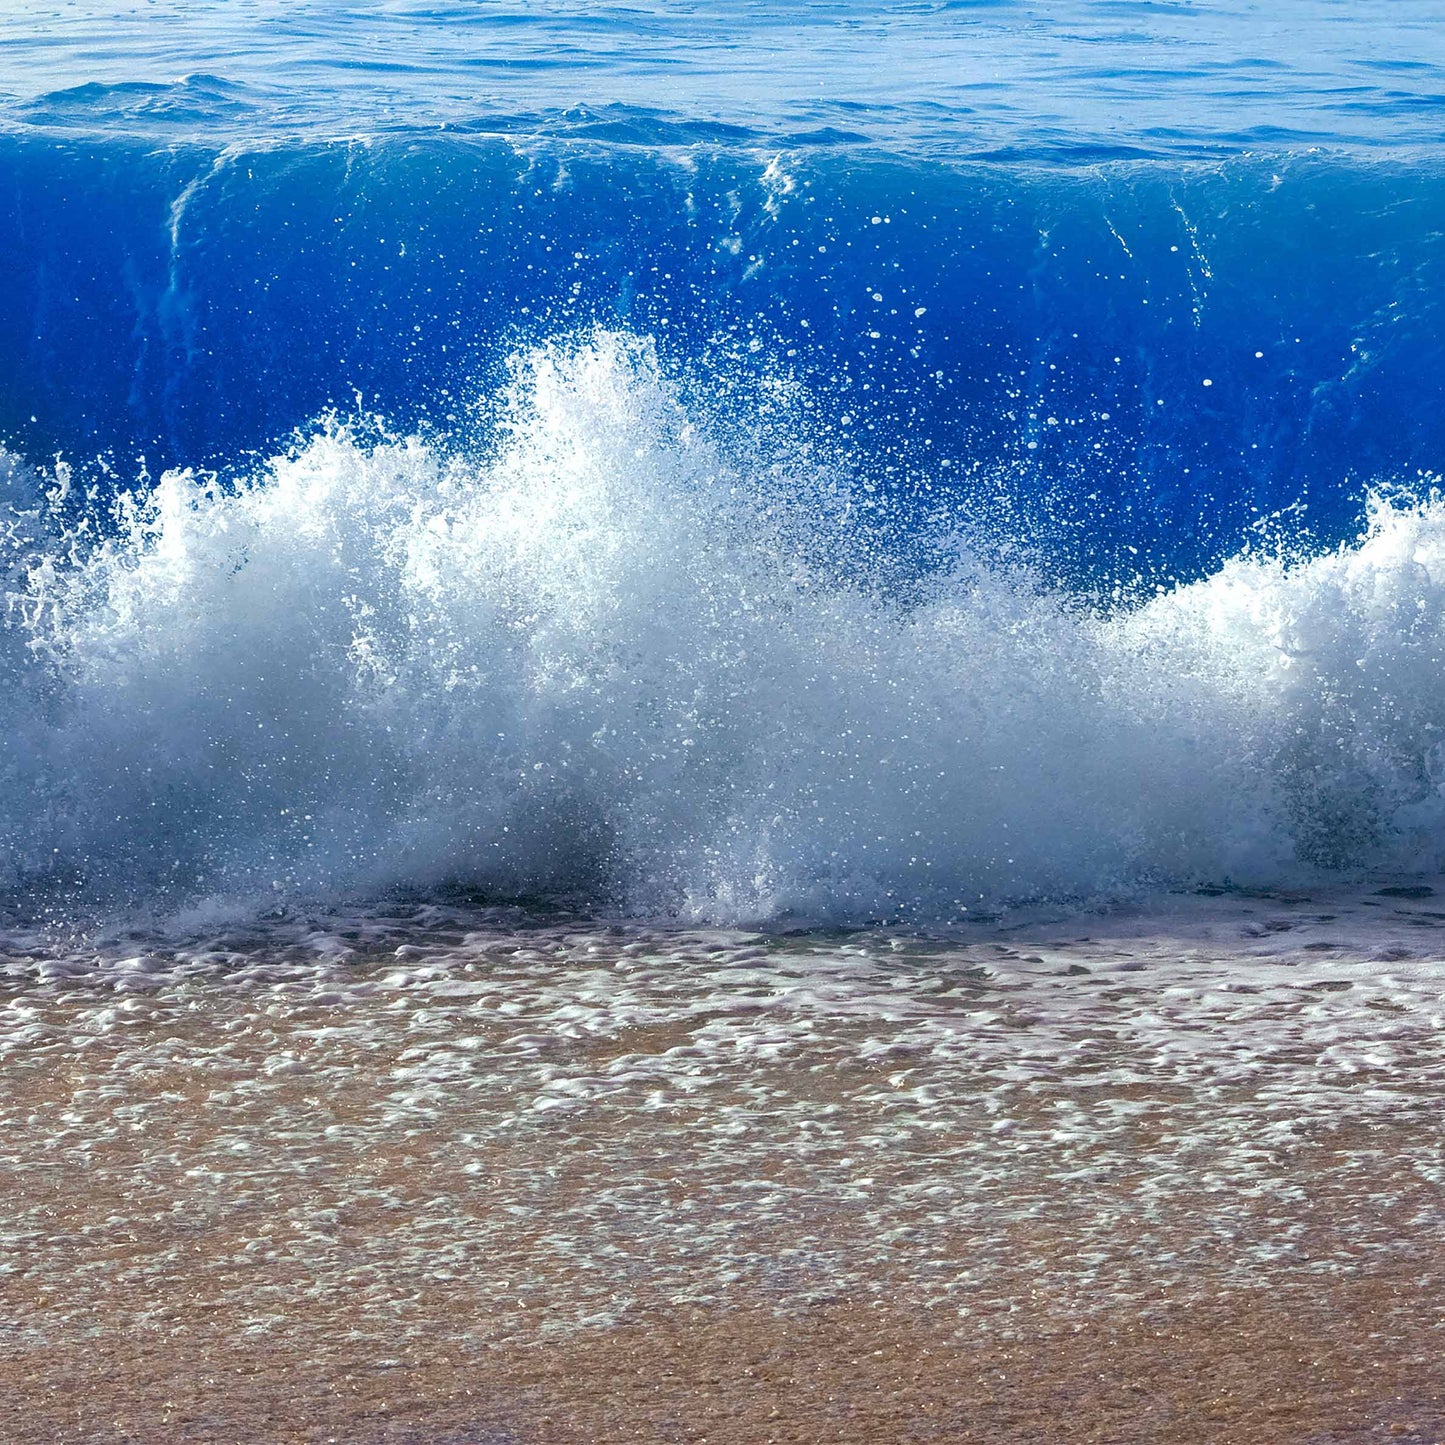 Crashing Waves in Sand